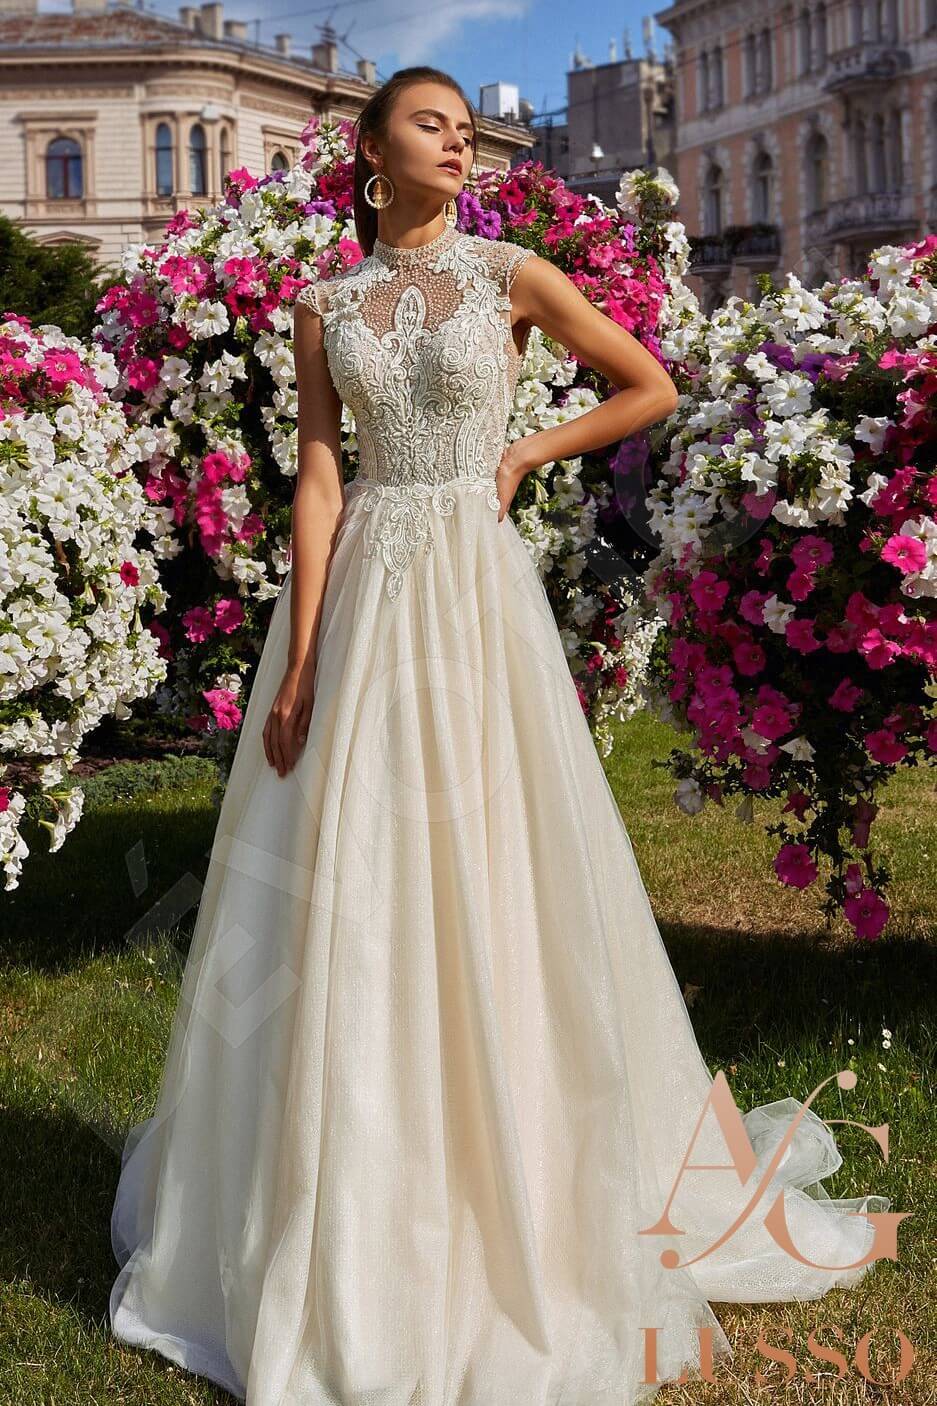 Florentina Open back A-line Sleeveless Wedding Dress Front